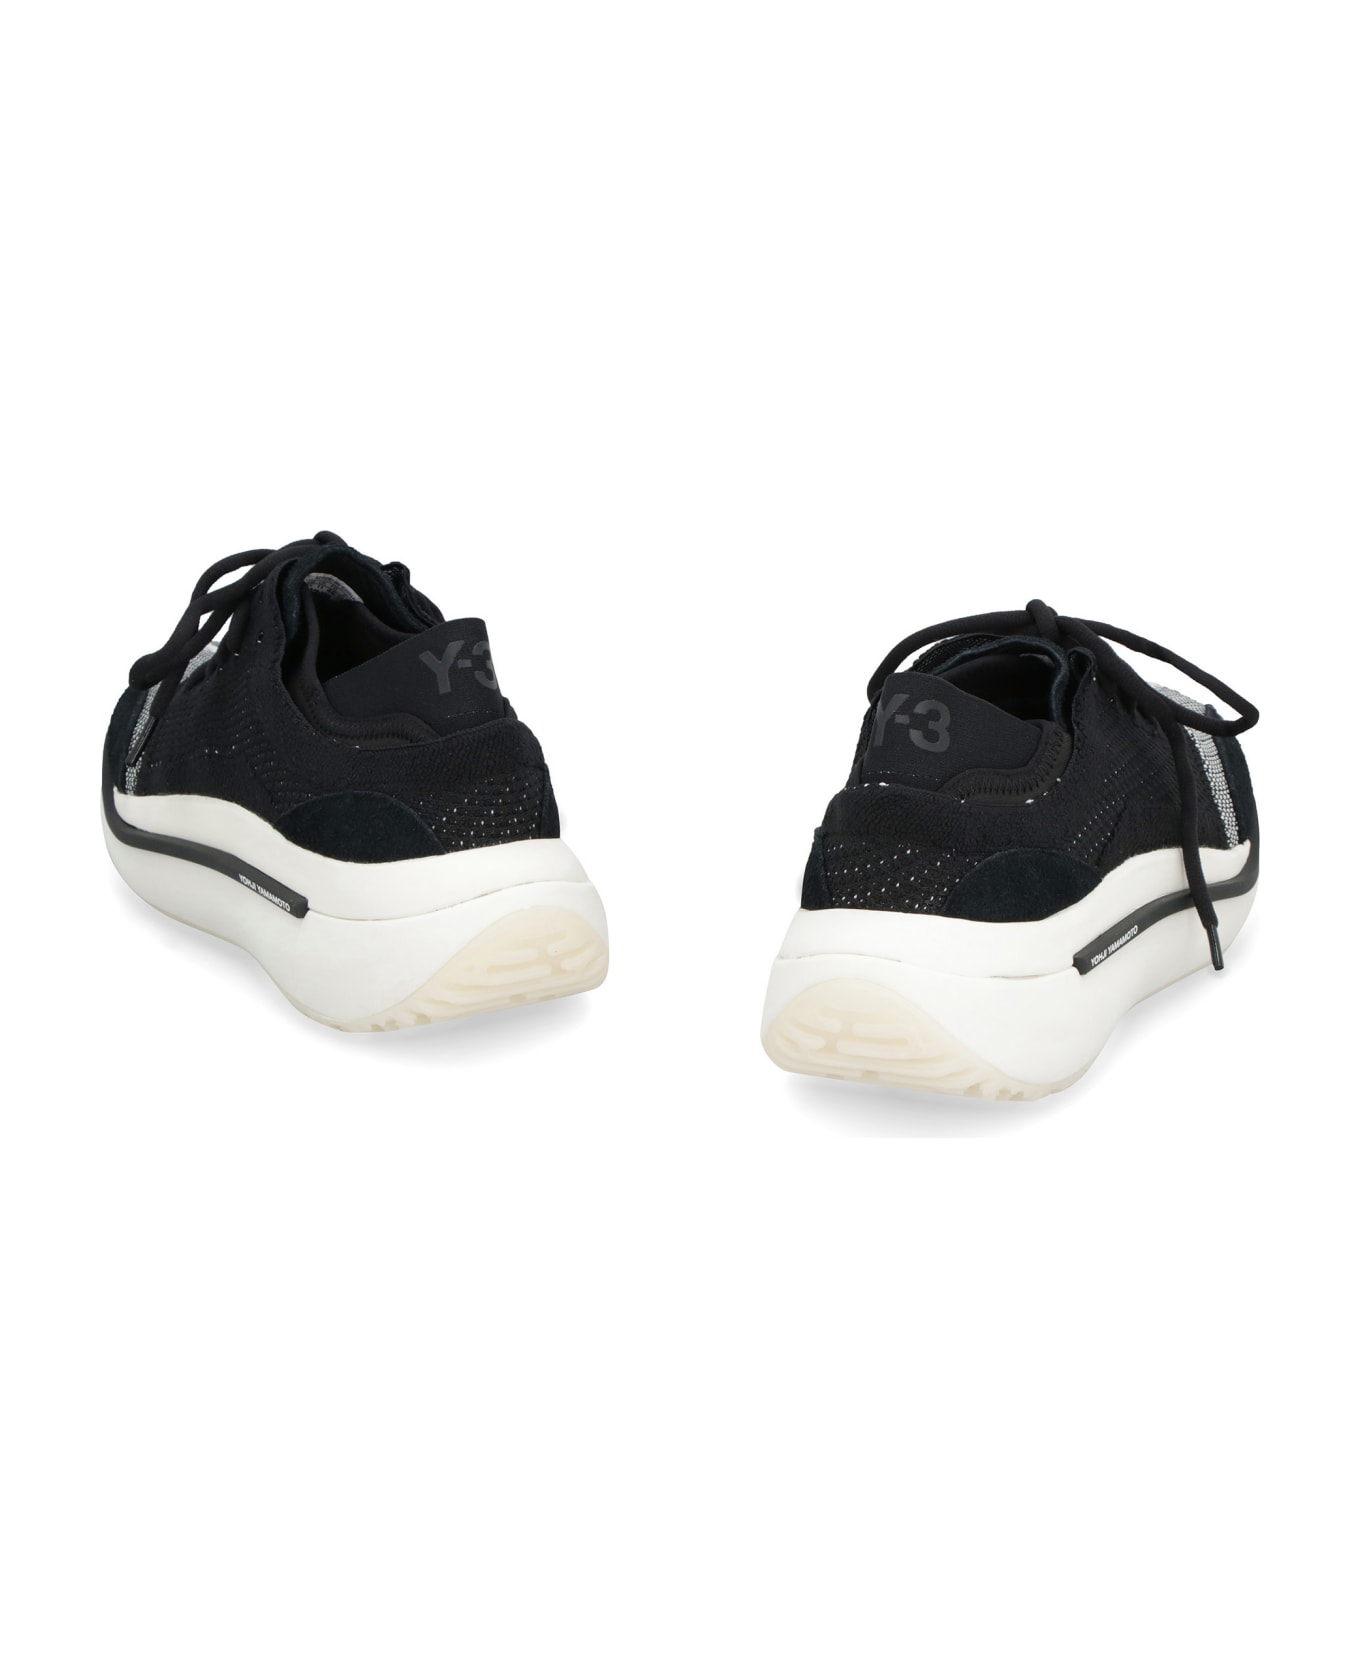 Y-3 Qisan Knit Sneakers - black